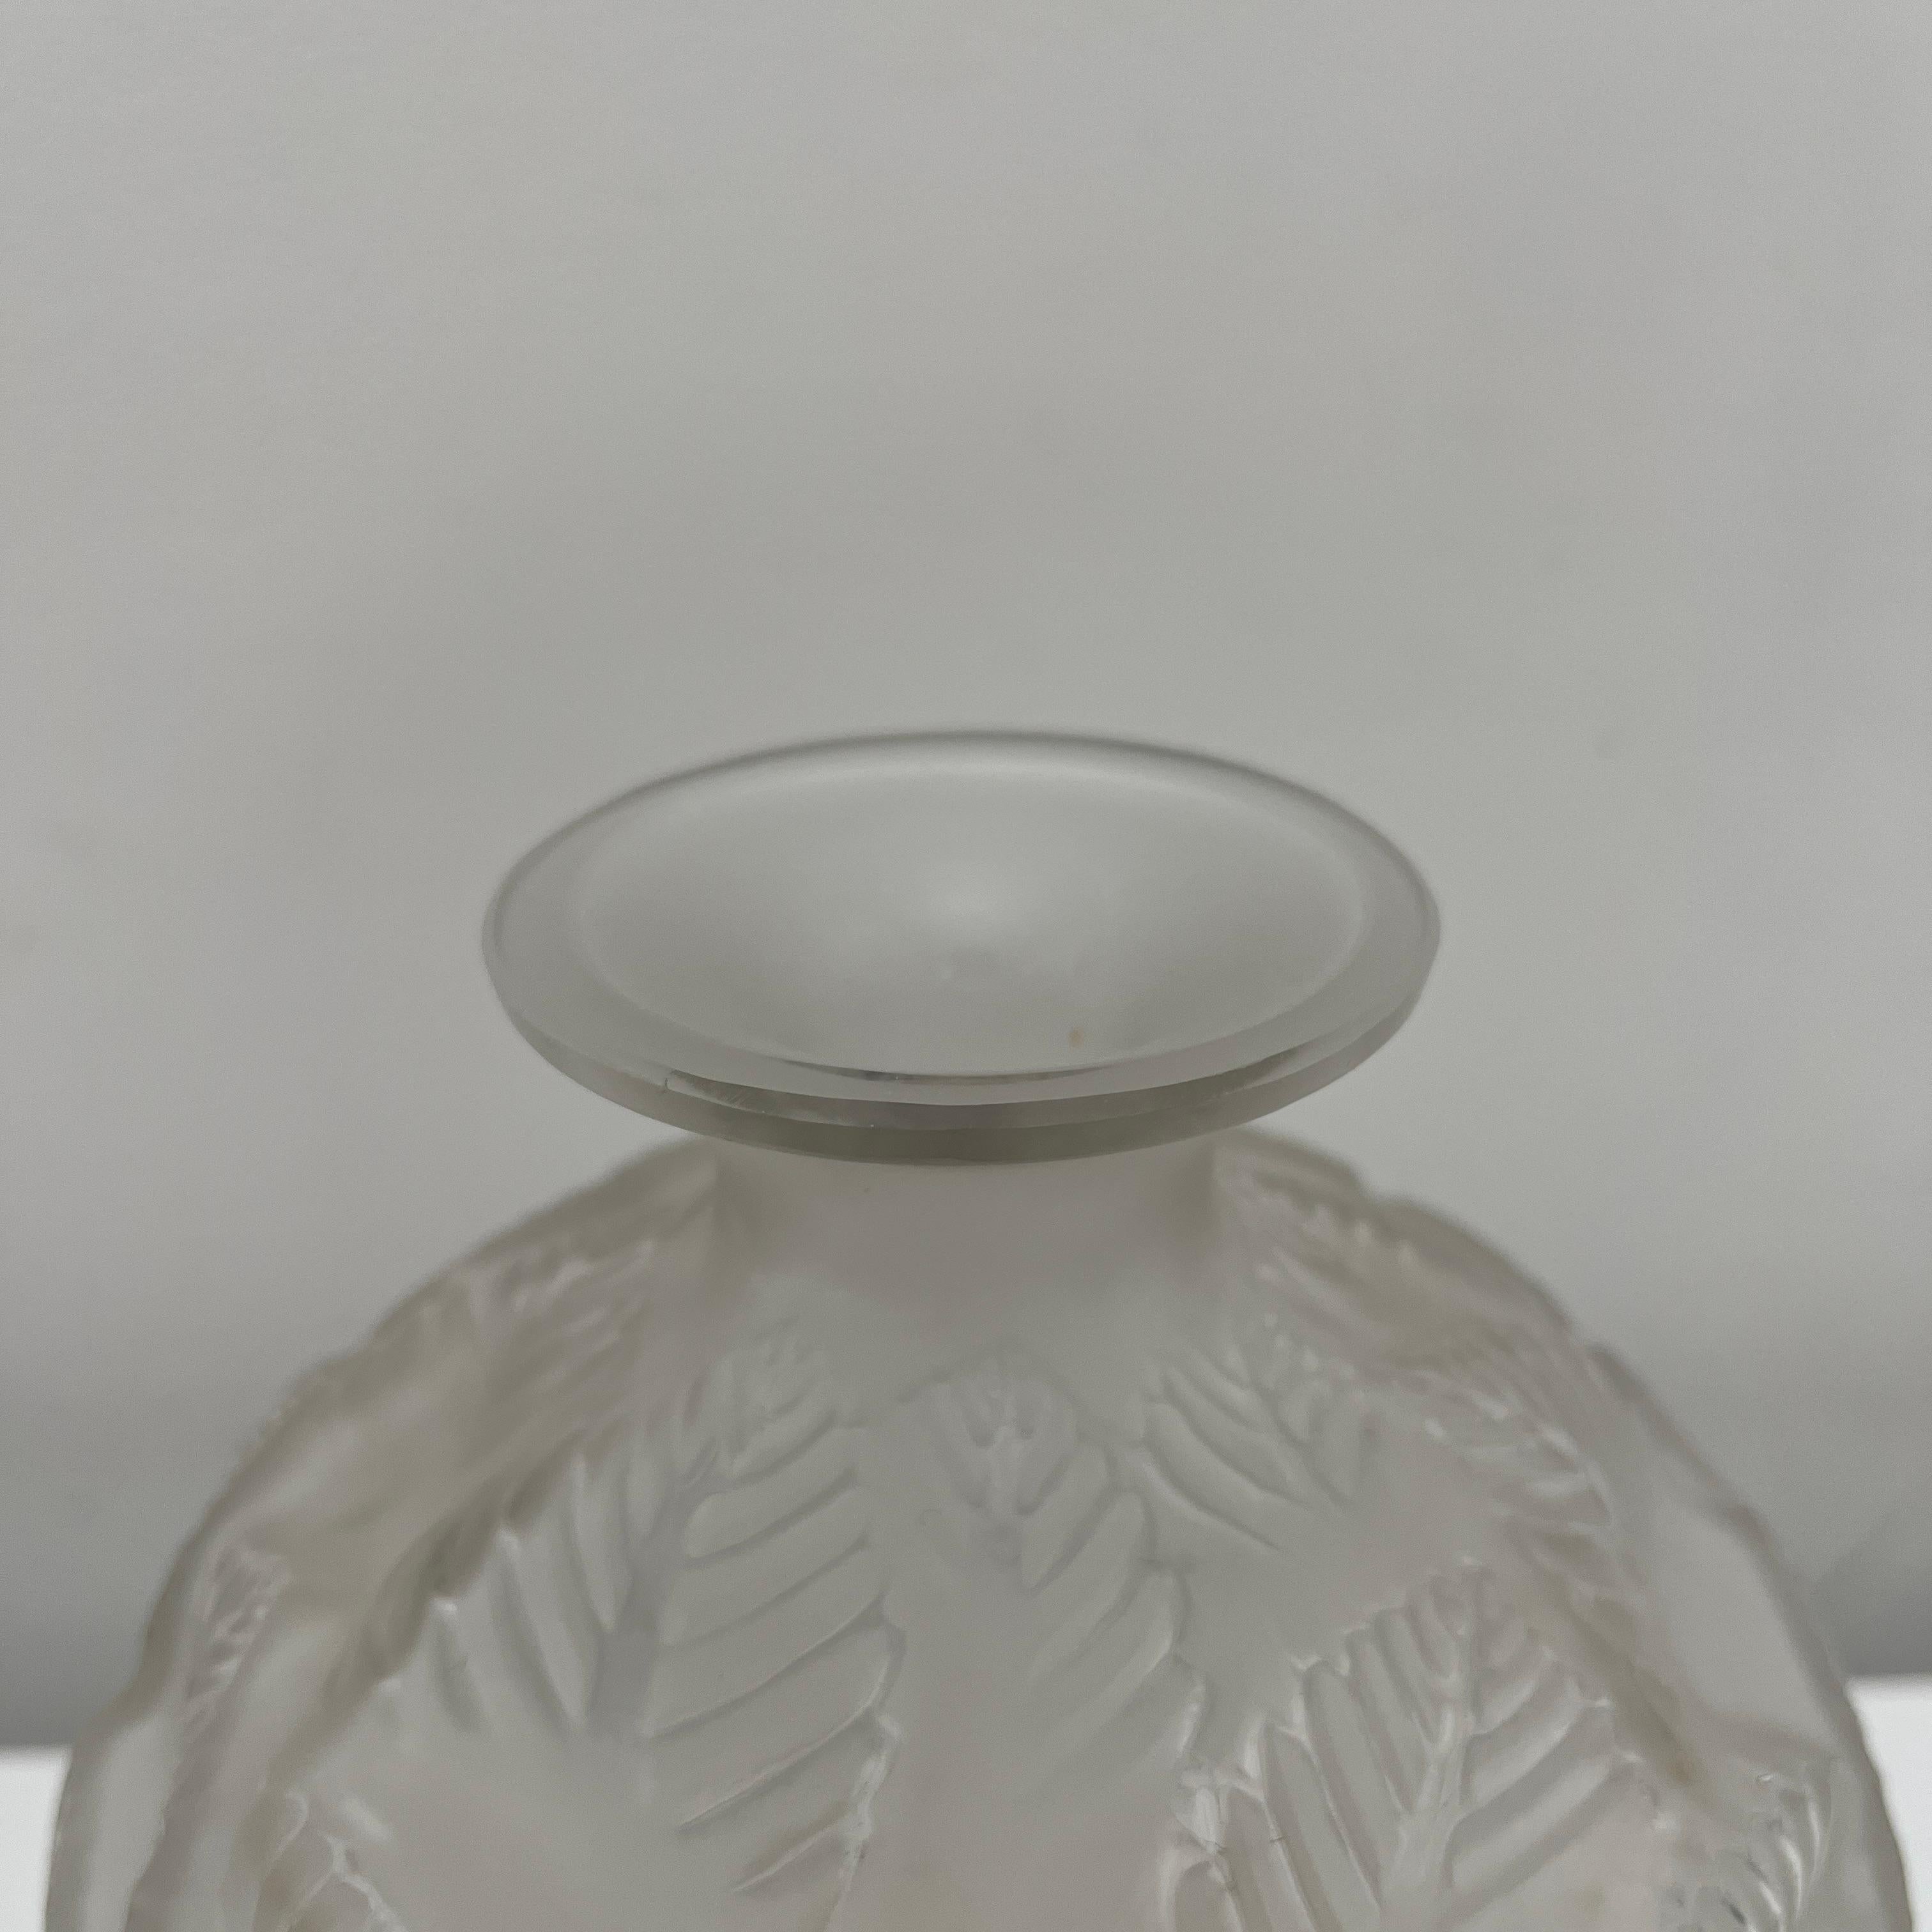 Frosted Vase Rene Lalique en verre translucide partiellement dépoli modèle 984 de 1926 For Sale